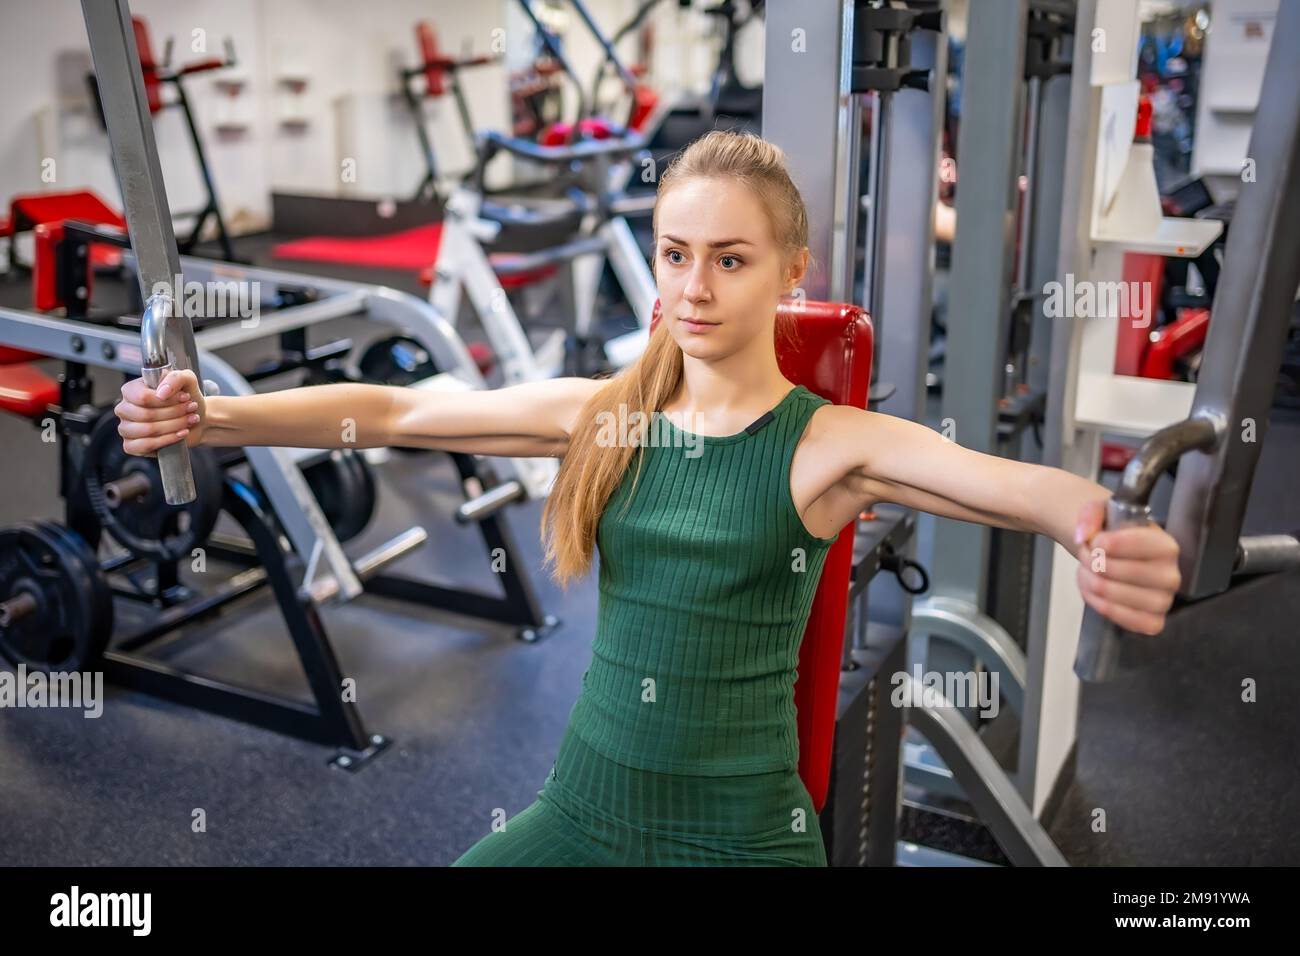 Une jeune femme s'entraîner sur un équipement de fitness à la salle de gym. Concept de santé, de sport et d'entraînement Banque D'Images